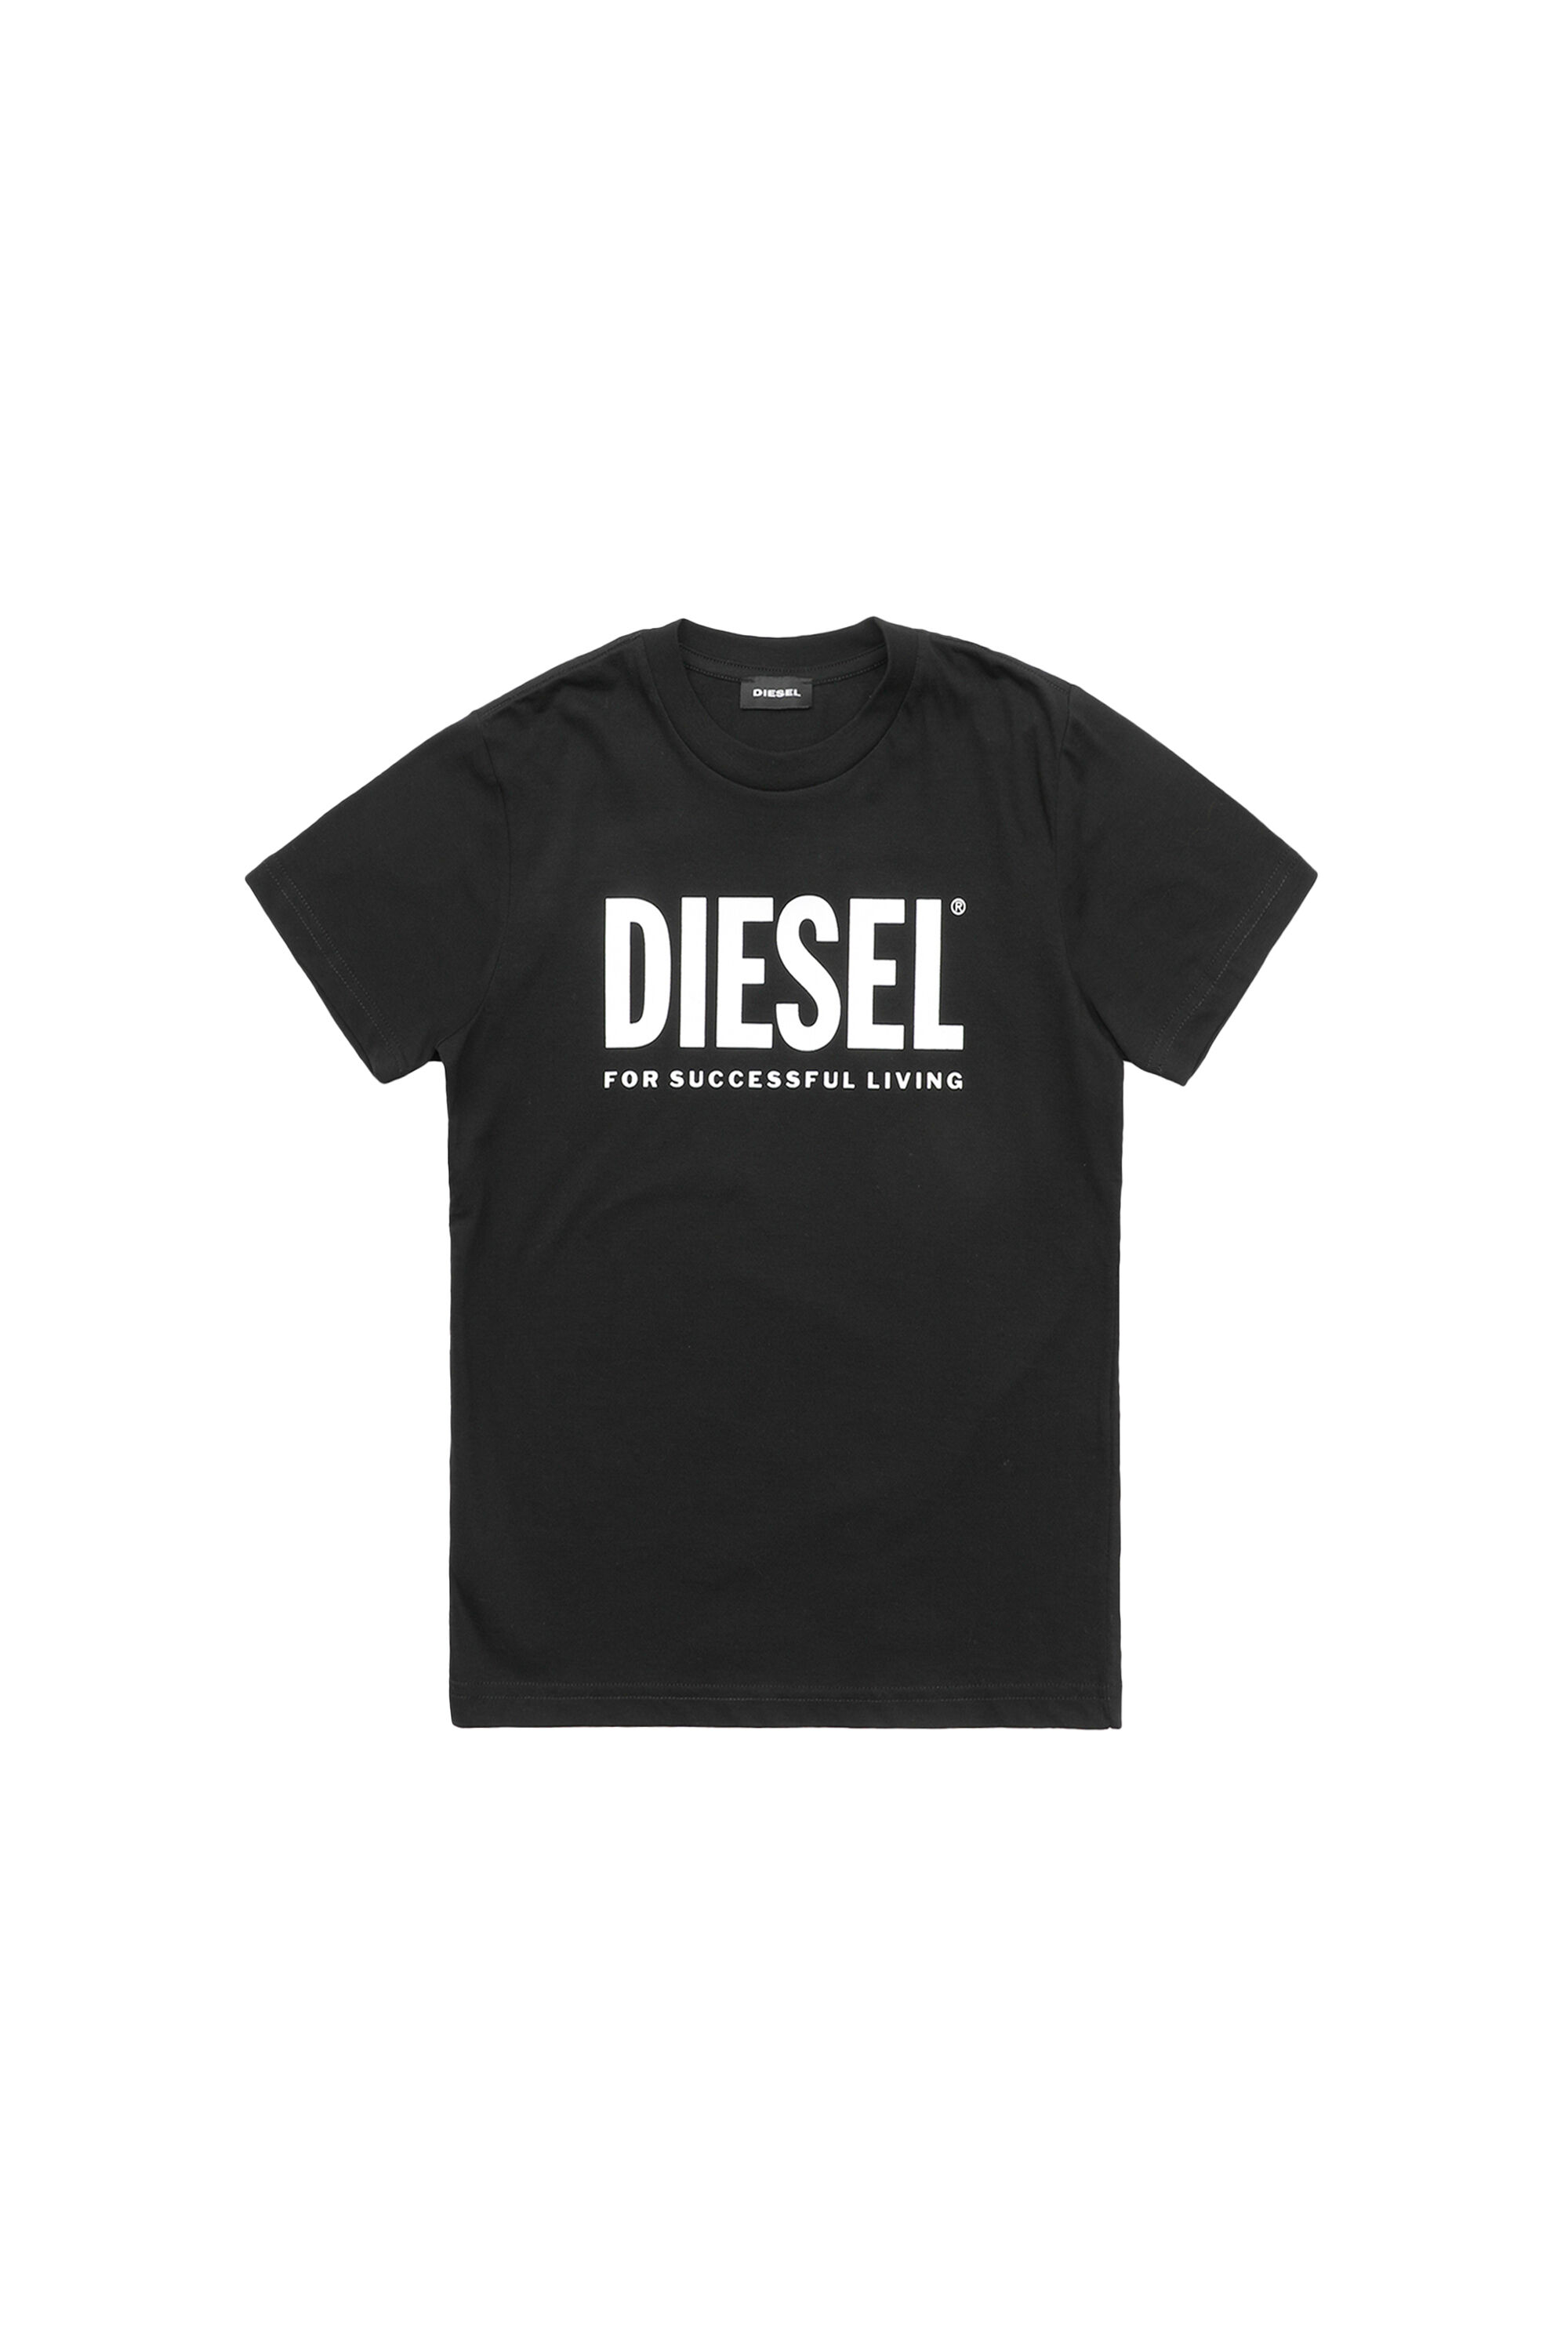 Diesel - TJUSTLOGO,  - Image 1